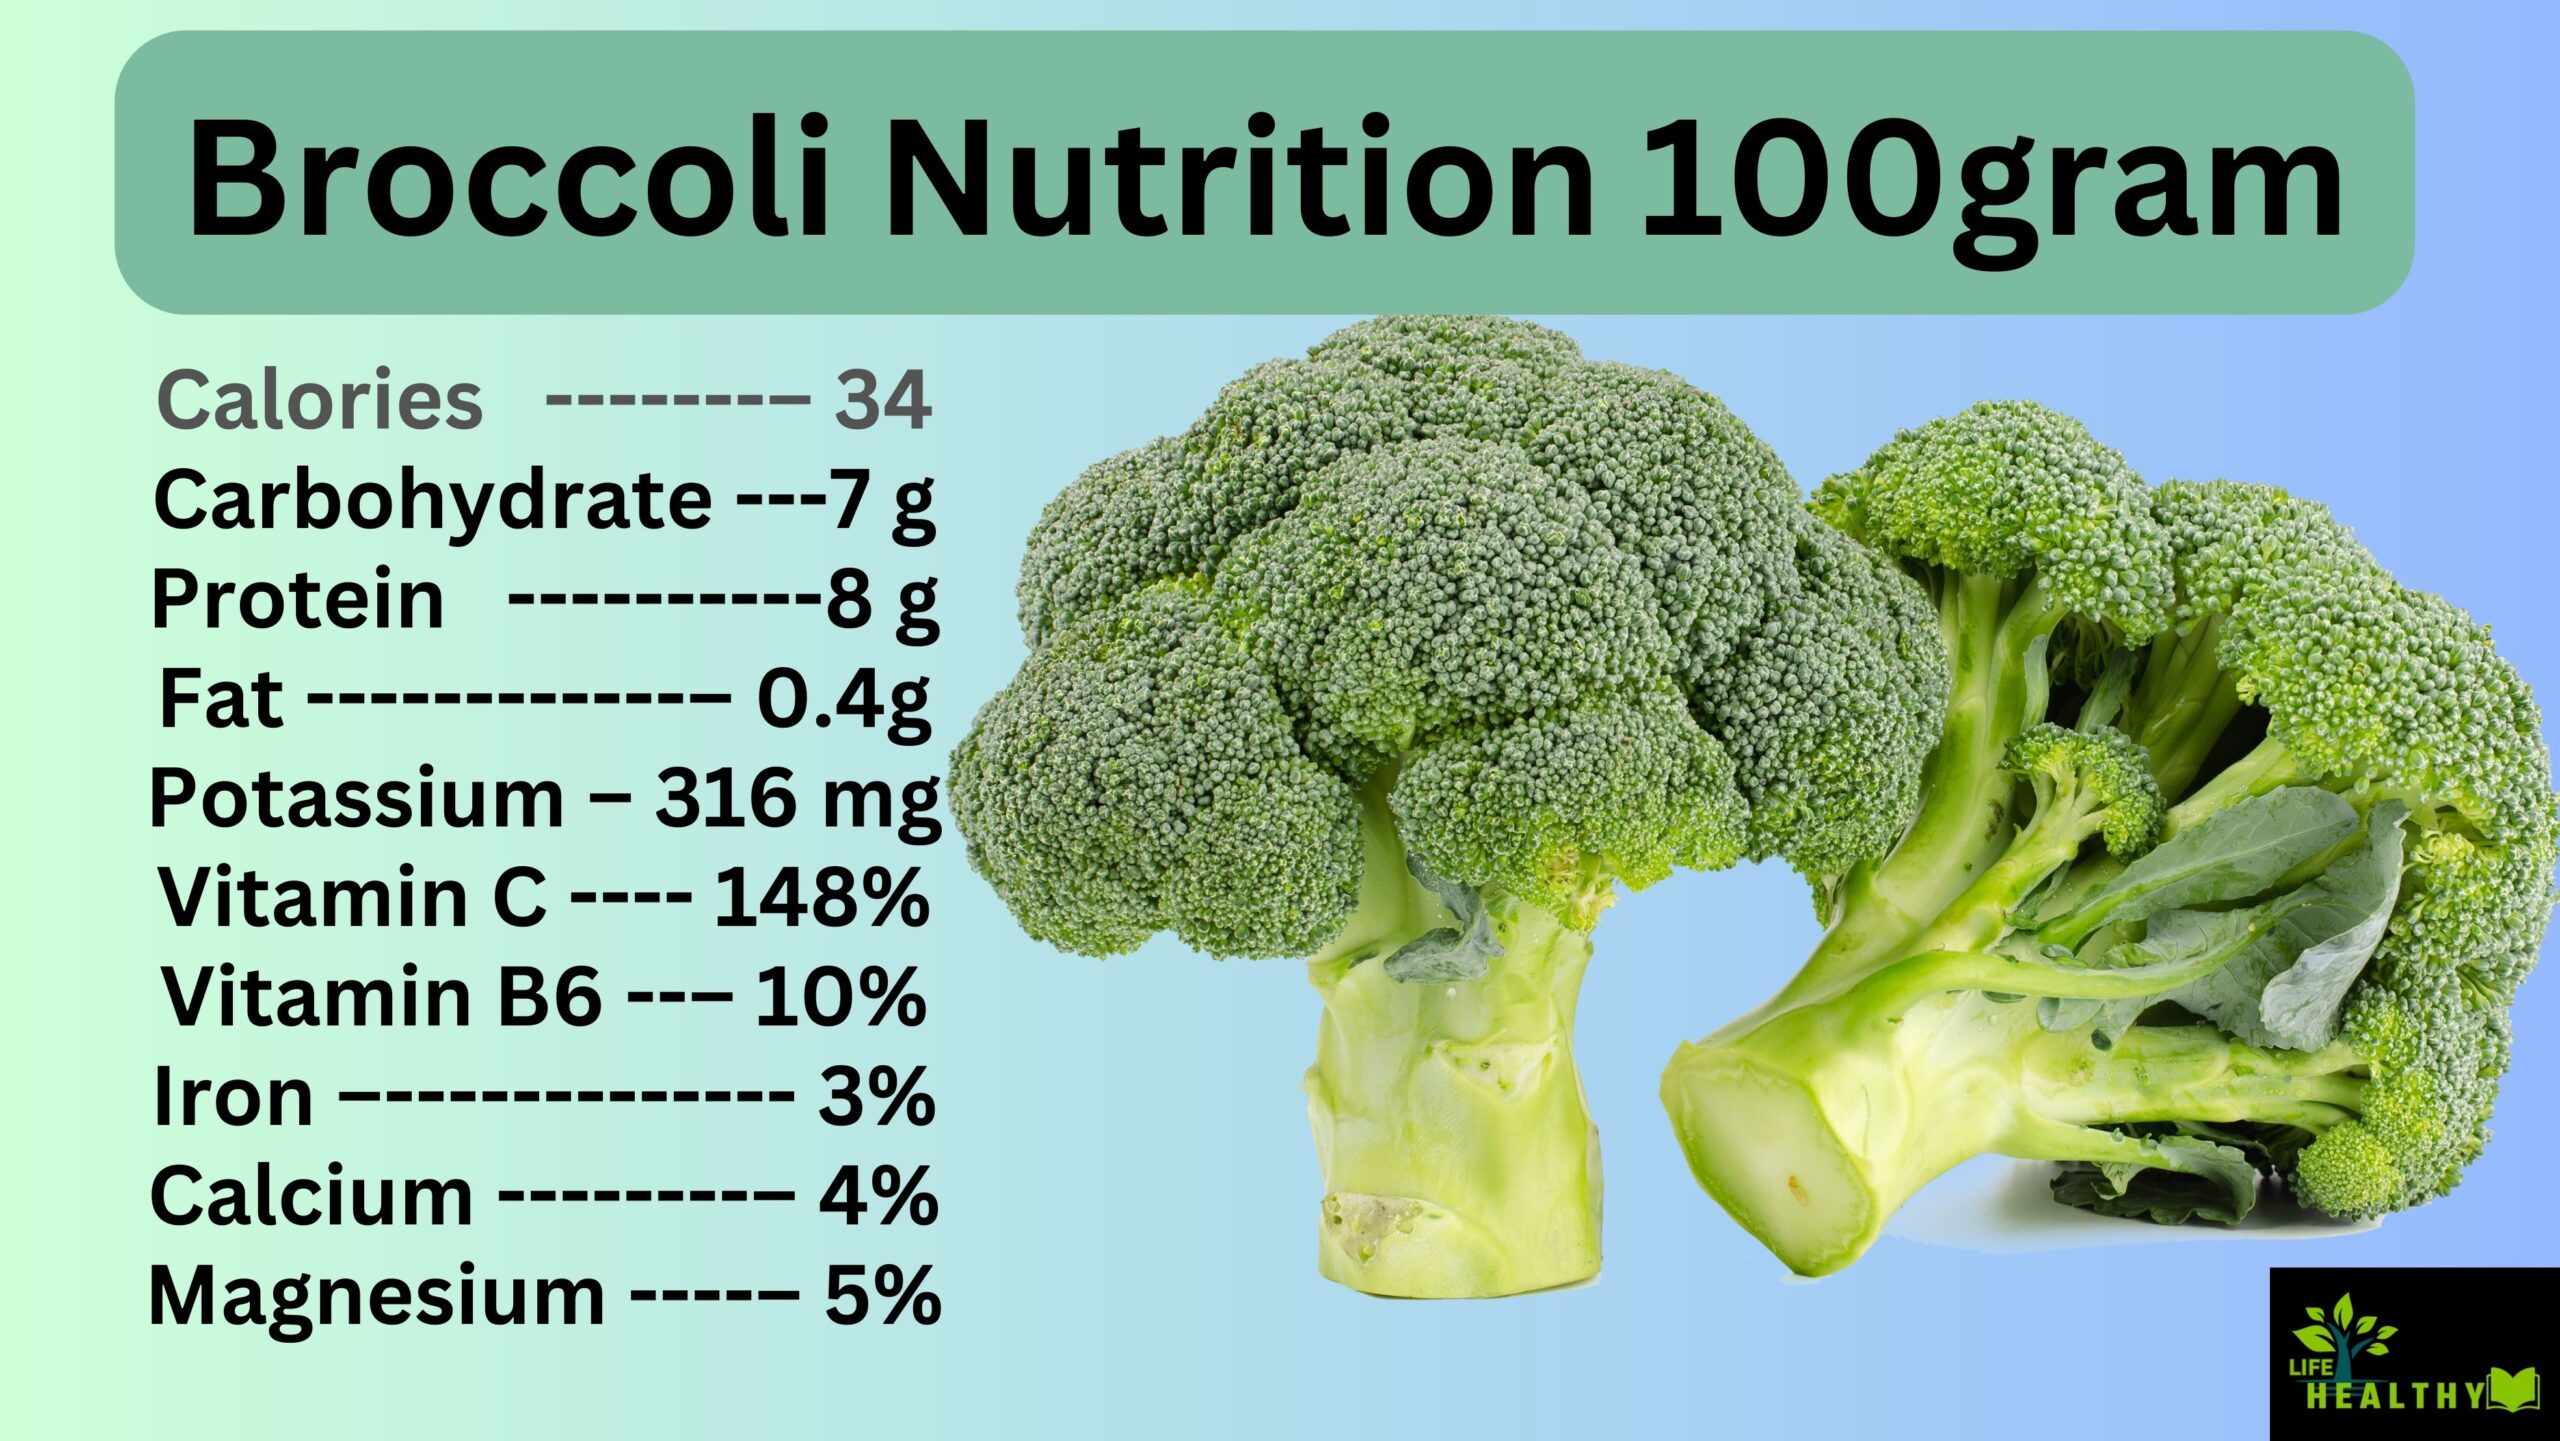 Broccoli nutritions 